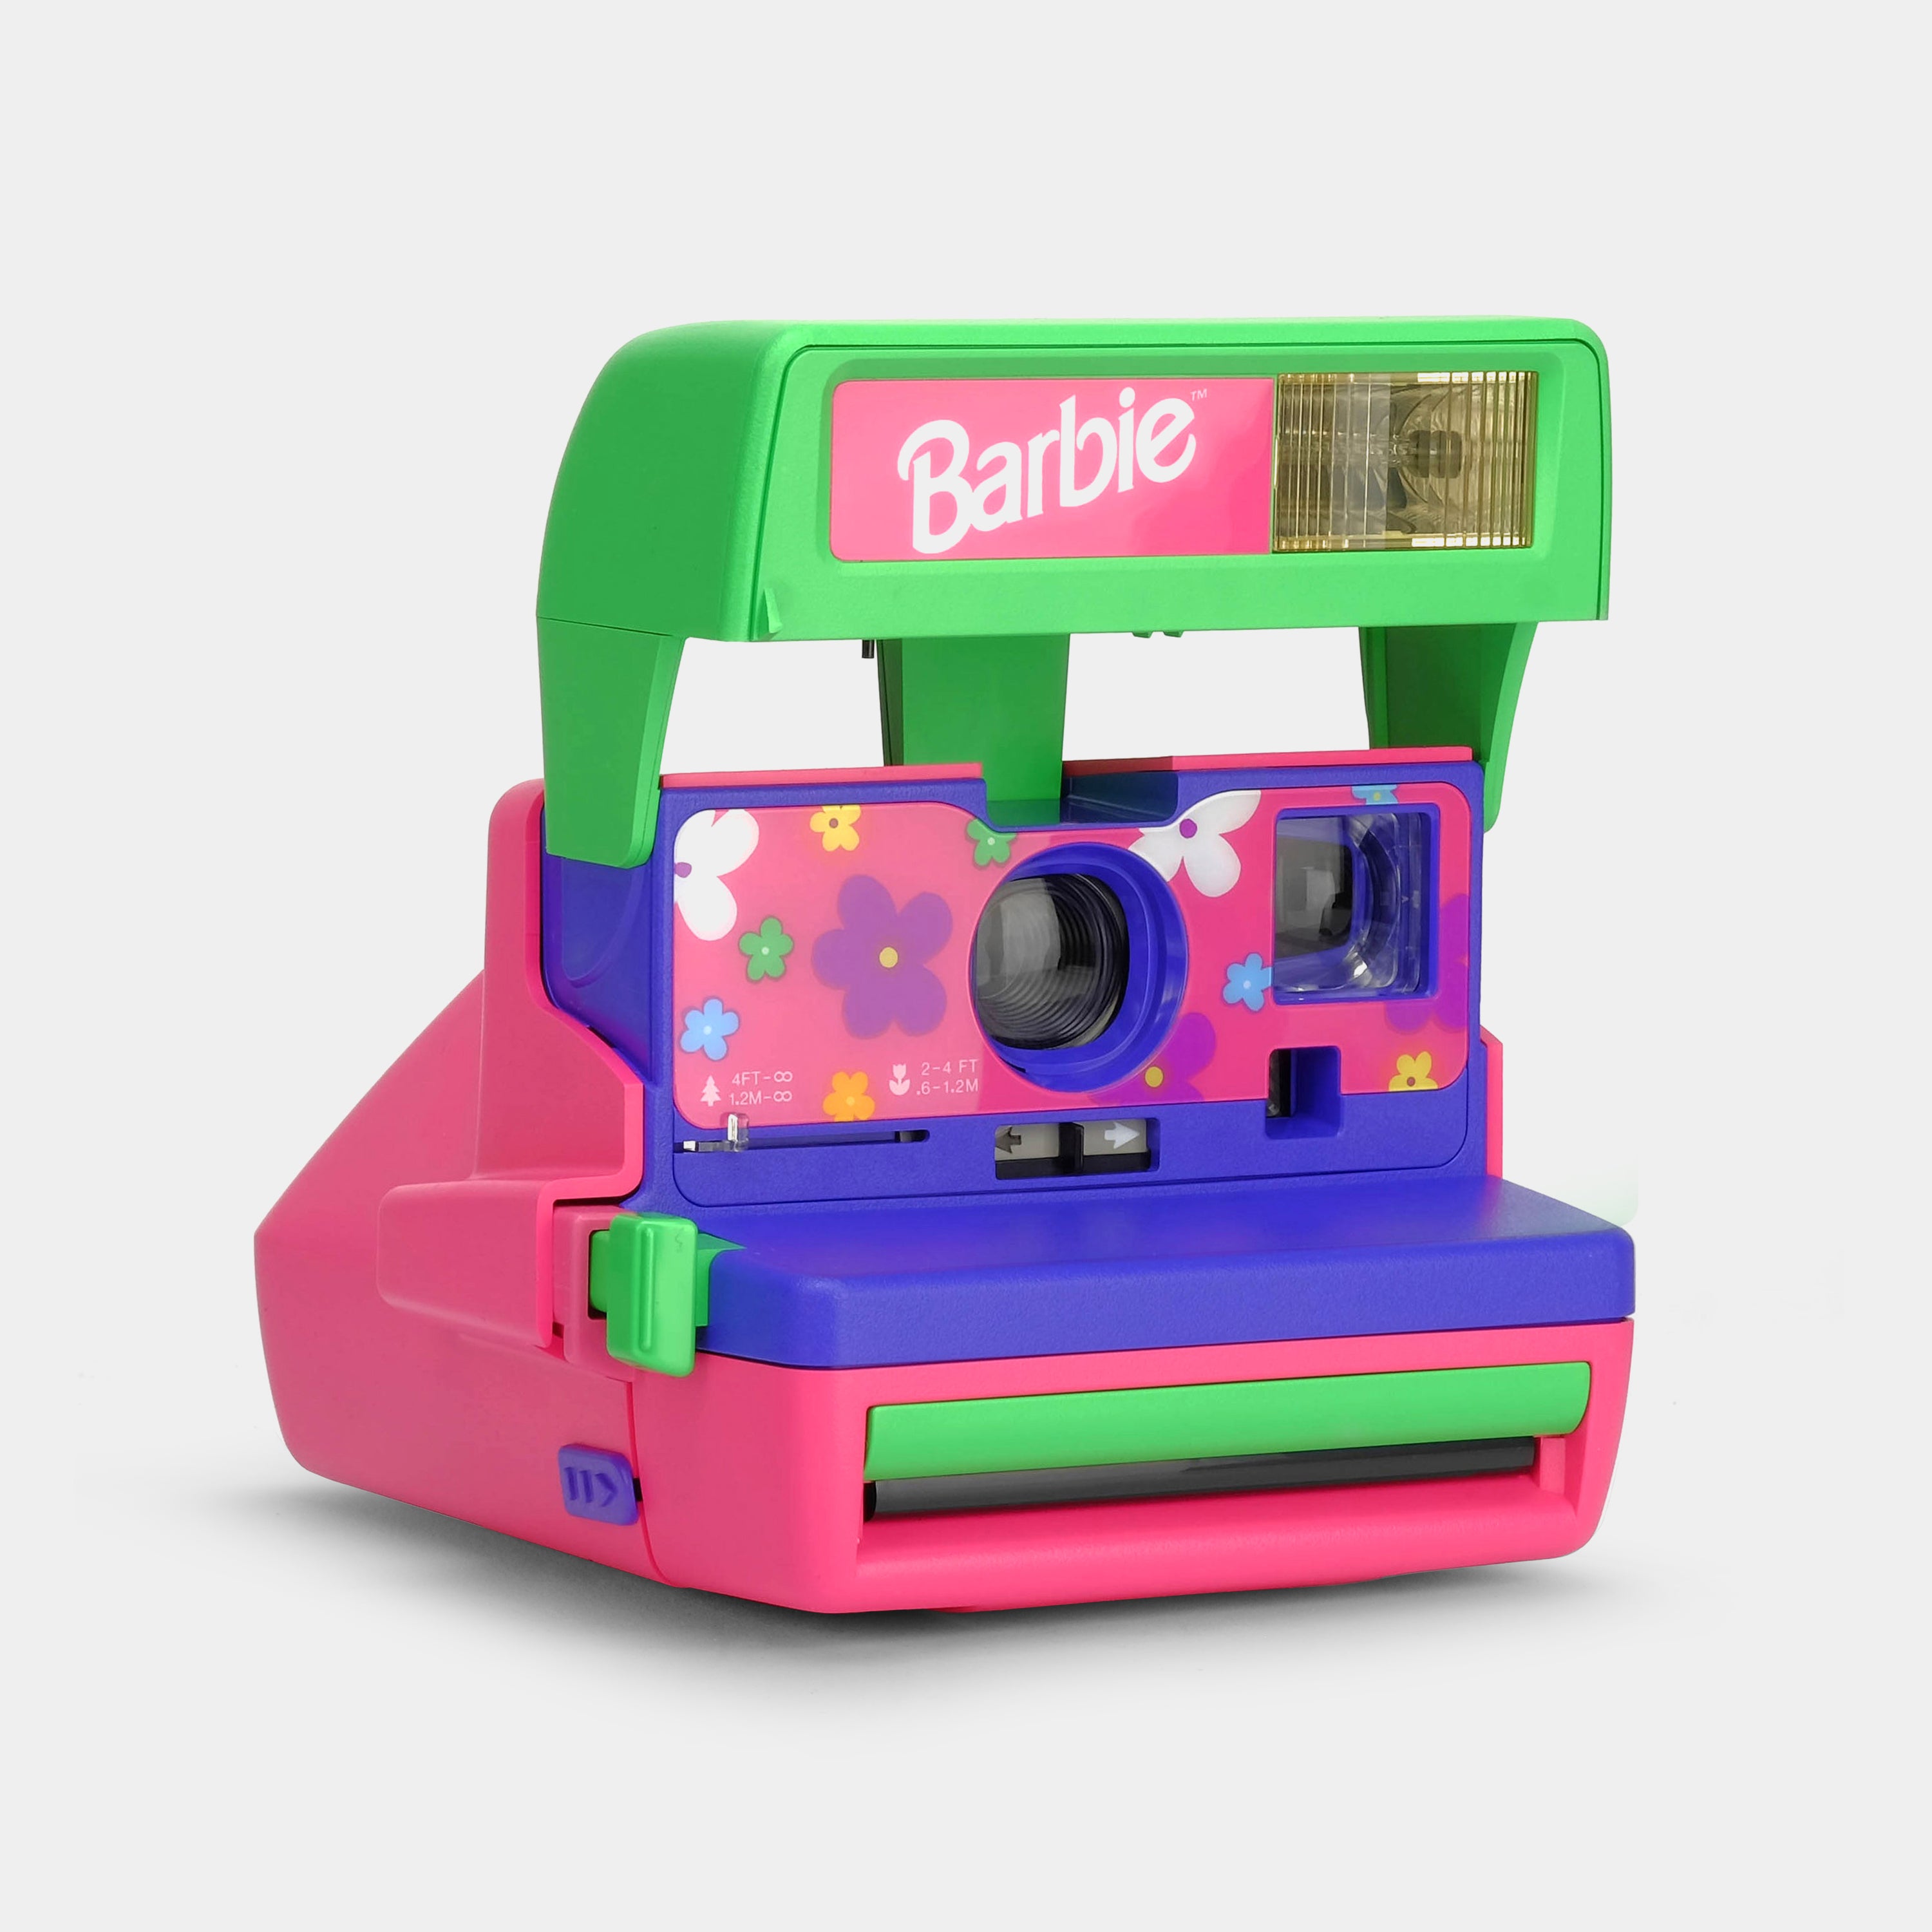 Polaroid 600 90s Barbie Instant Film Camera